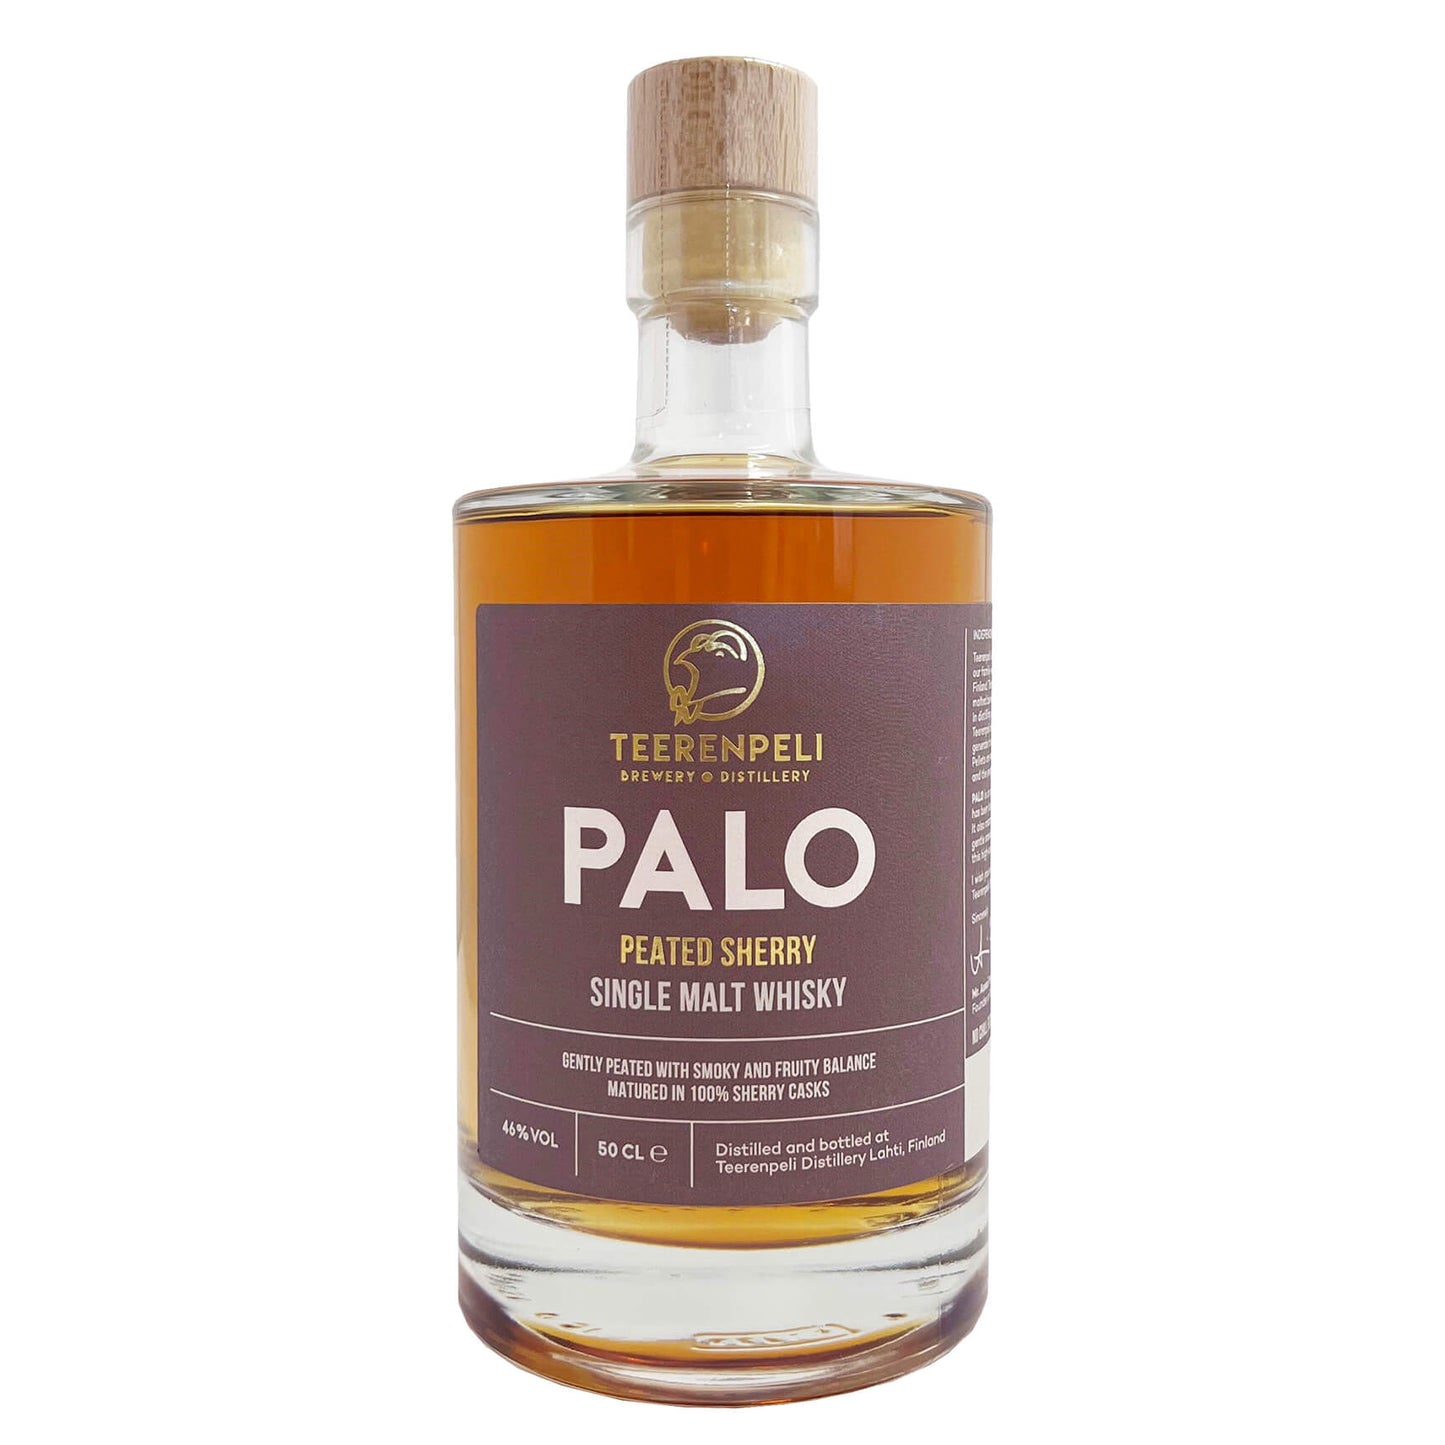 Teerenpeli Palo Single Malt Whisky 0,5l